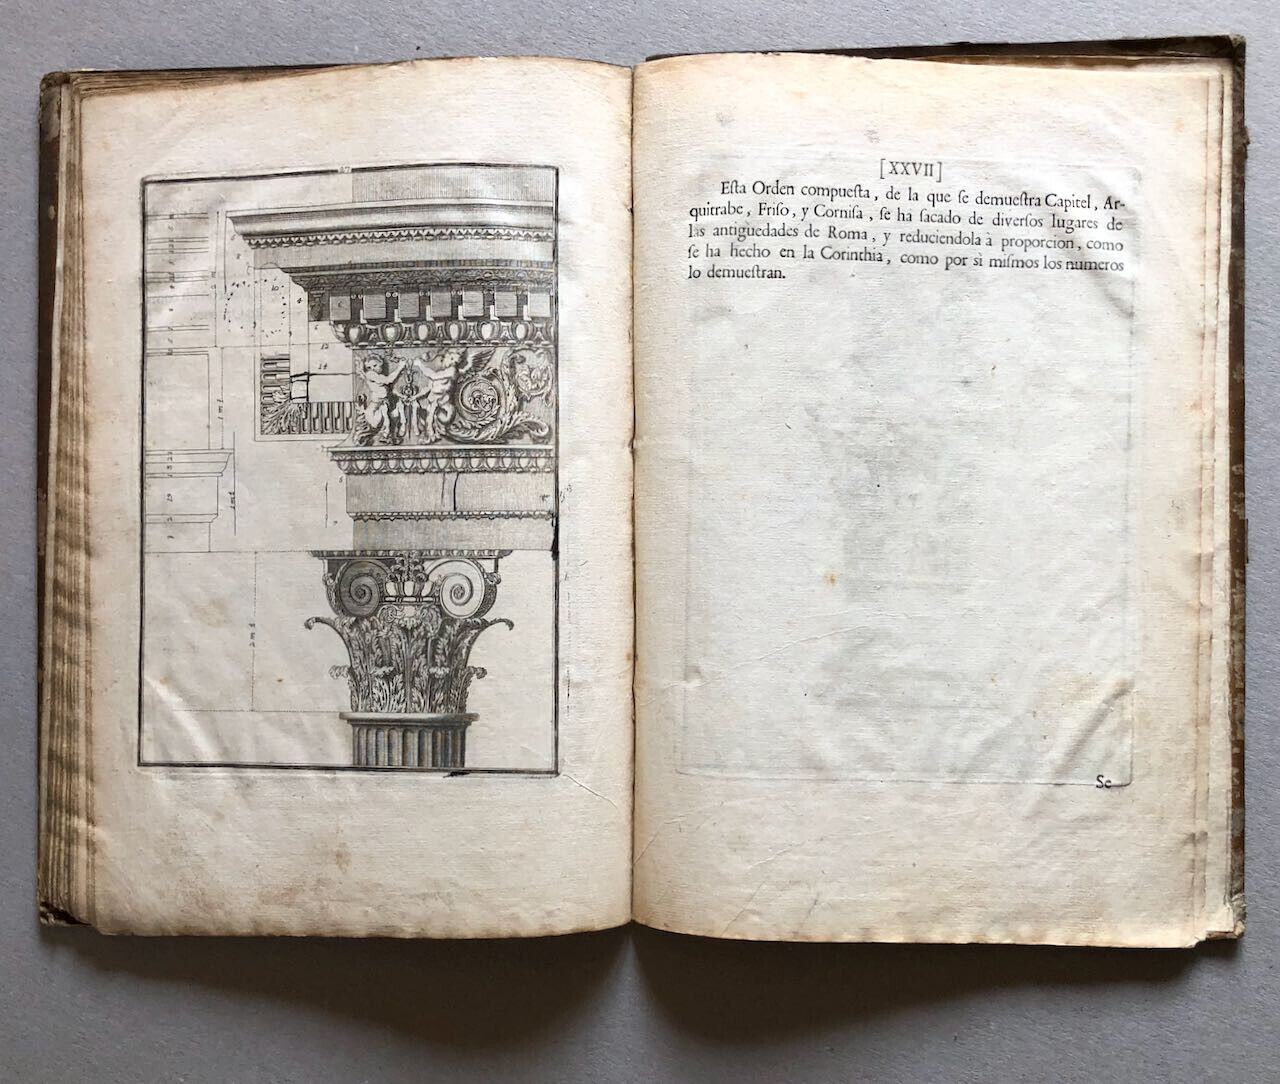 [Vignole] Jacome de Vignola — Regla de las cinco órdenes de arquitectura — 1764.